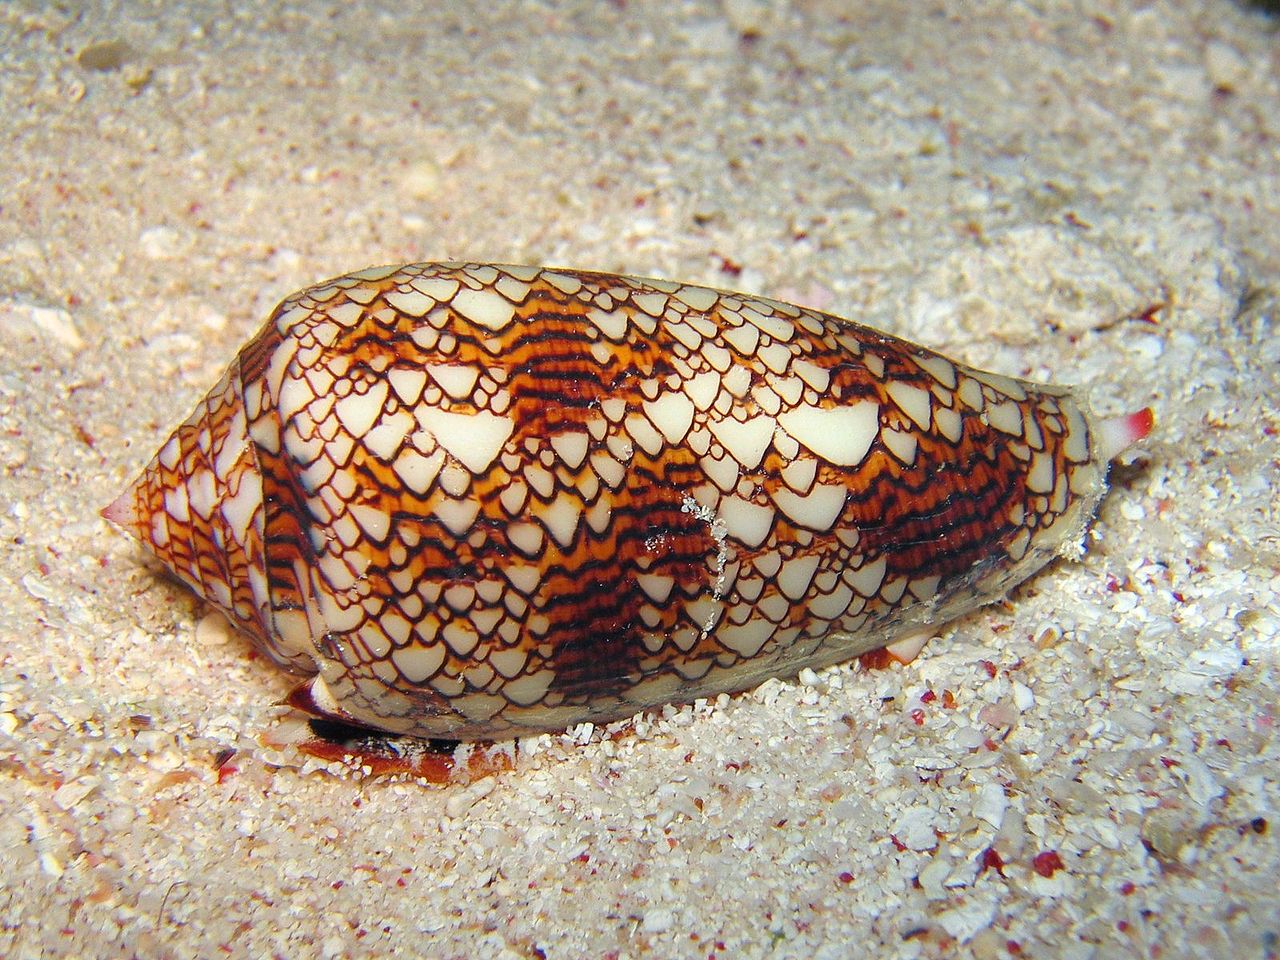 Textile Cone Snail; Most dangerous sea creatures